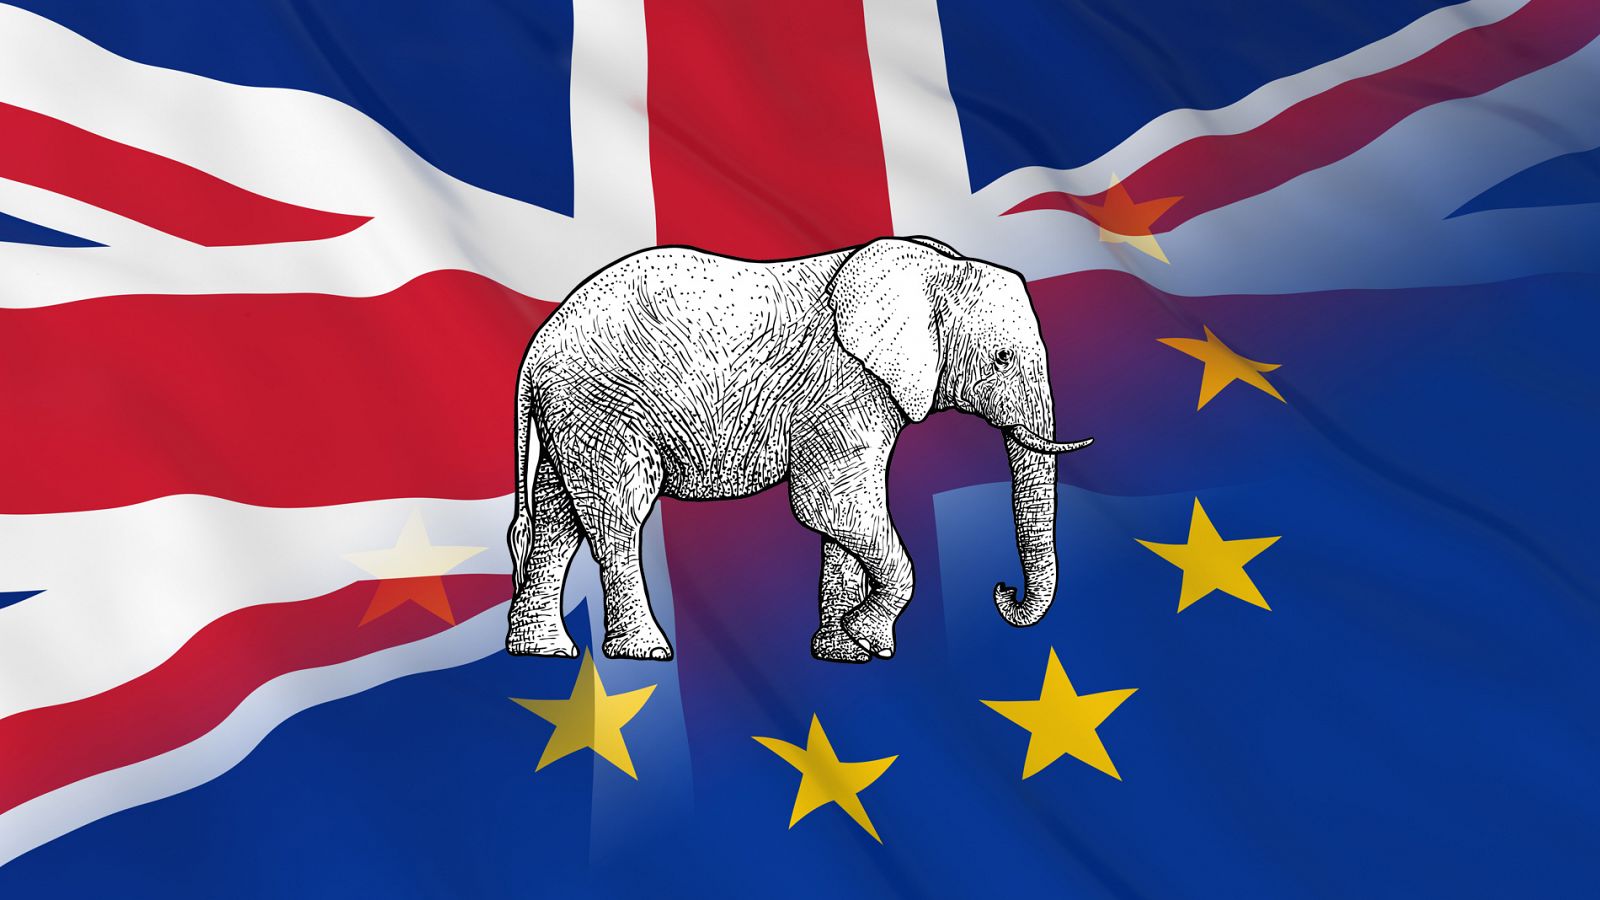 Banderas de Reino Unido y la Unión Europea ondean tras la ilustración de un elefante